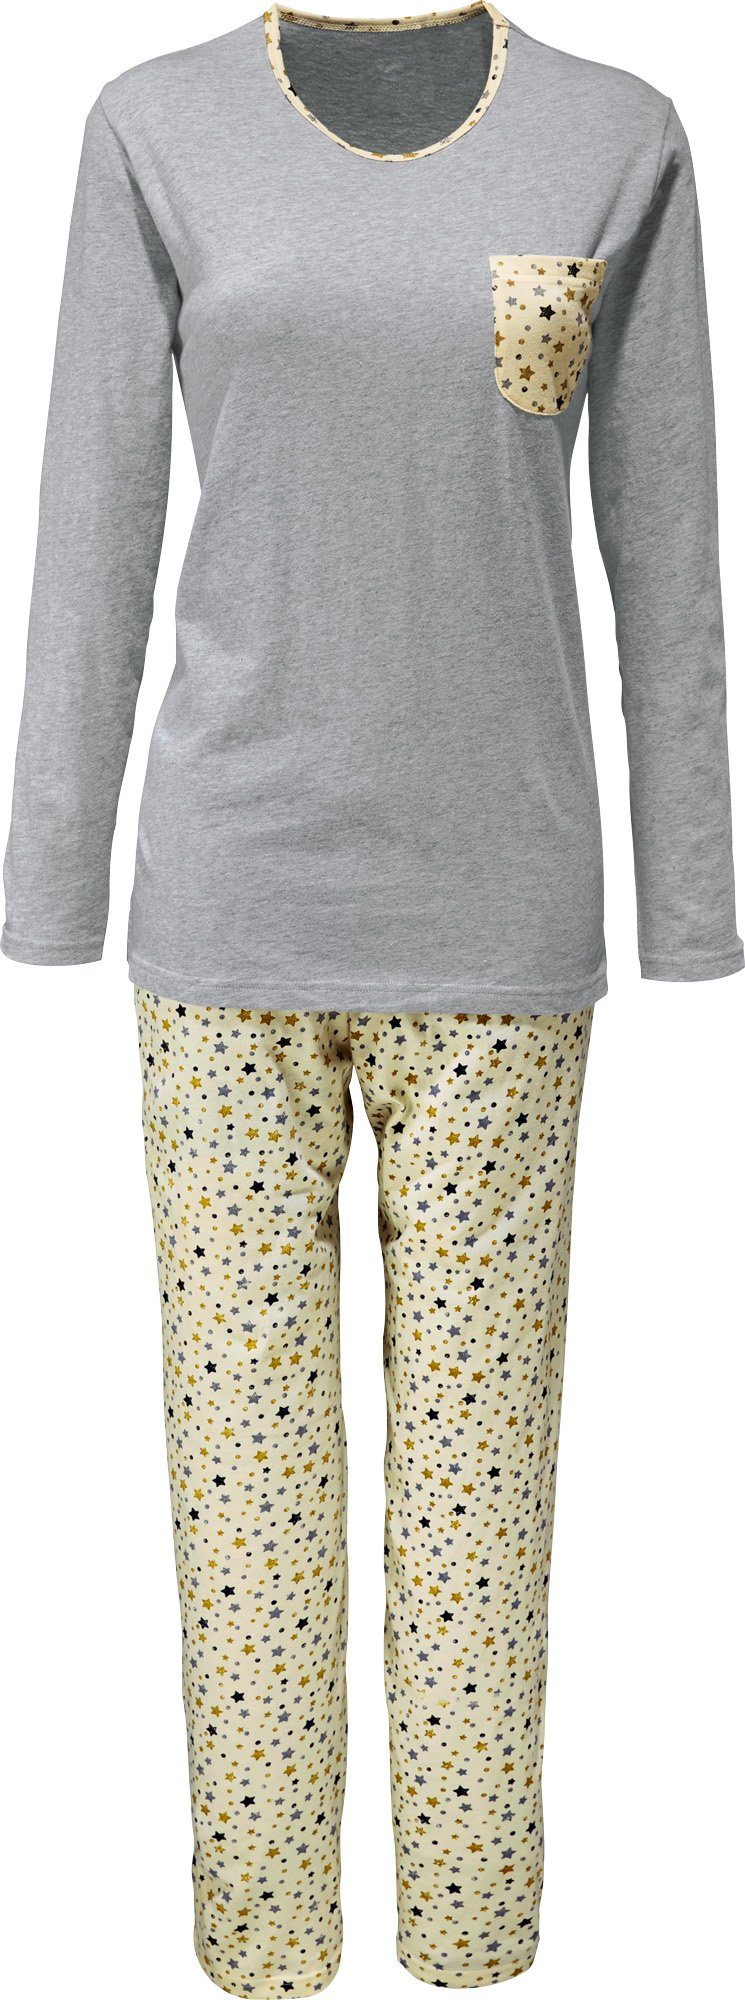 Erwin Müller Pyjama Damen-Schlafanzug (2 tlg) Single-Jersey gemustert